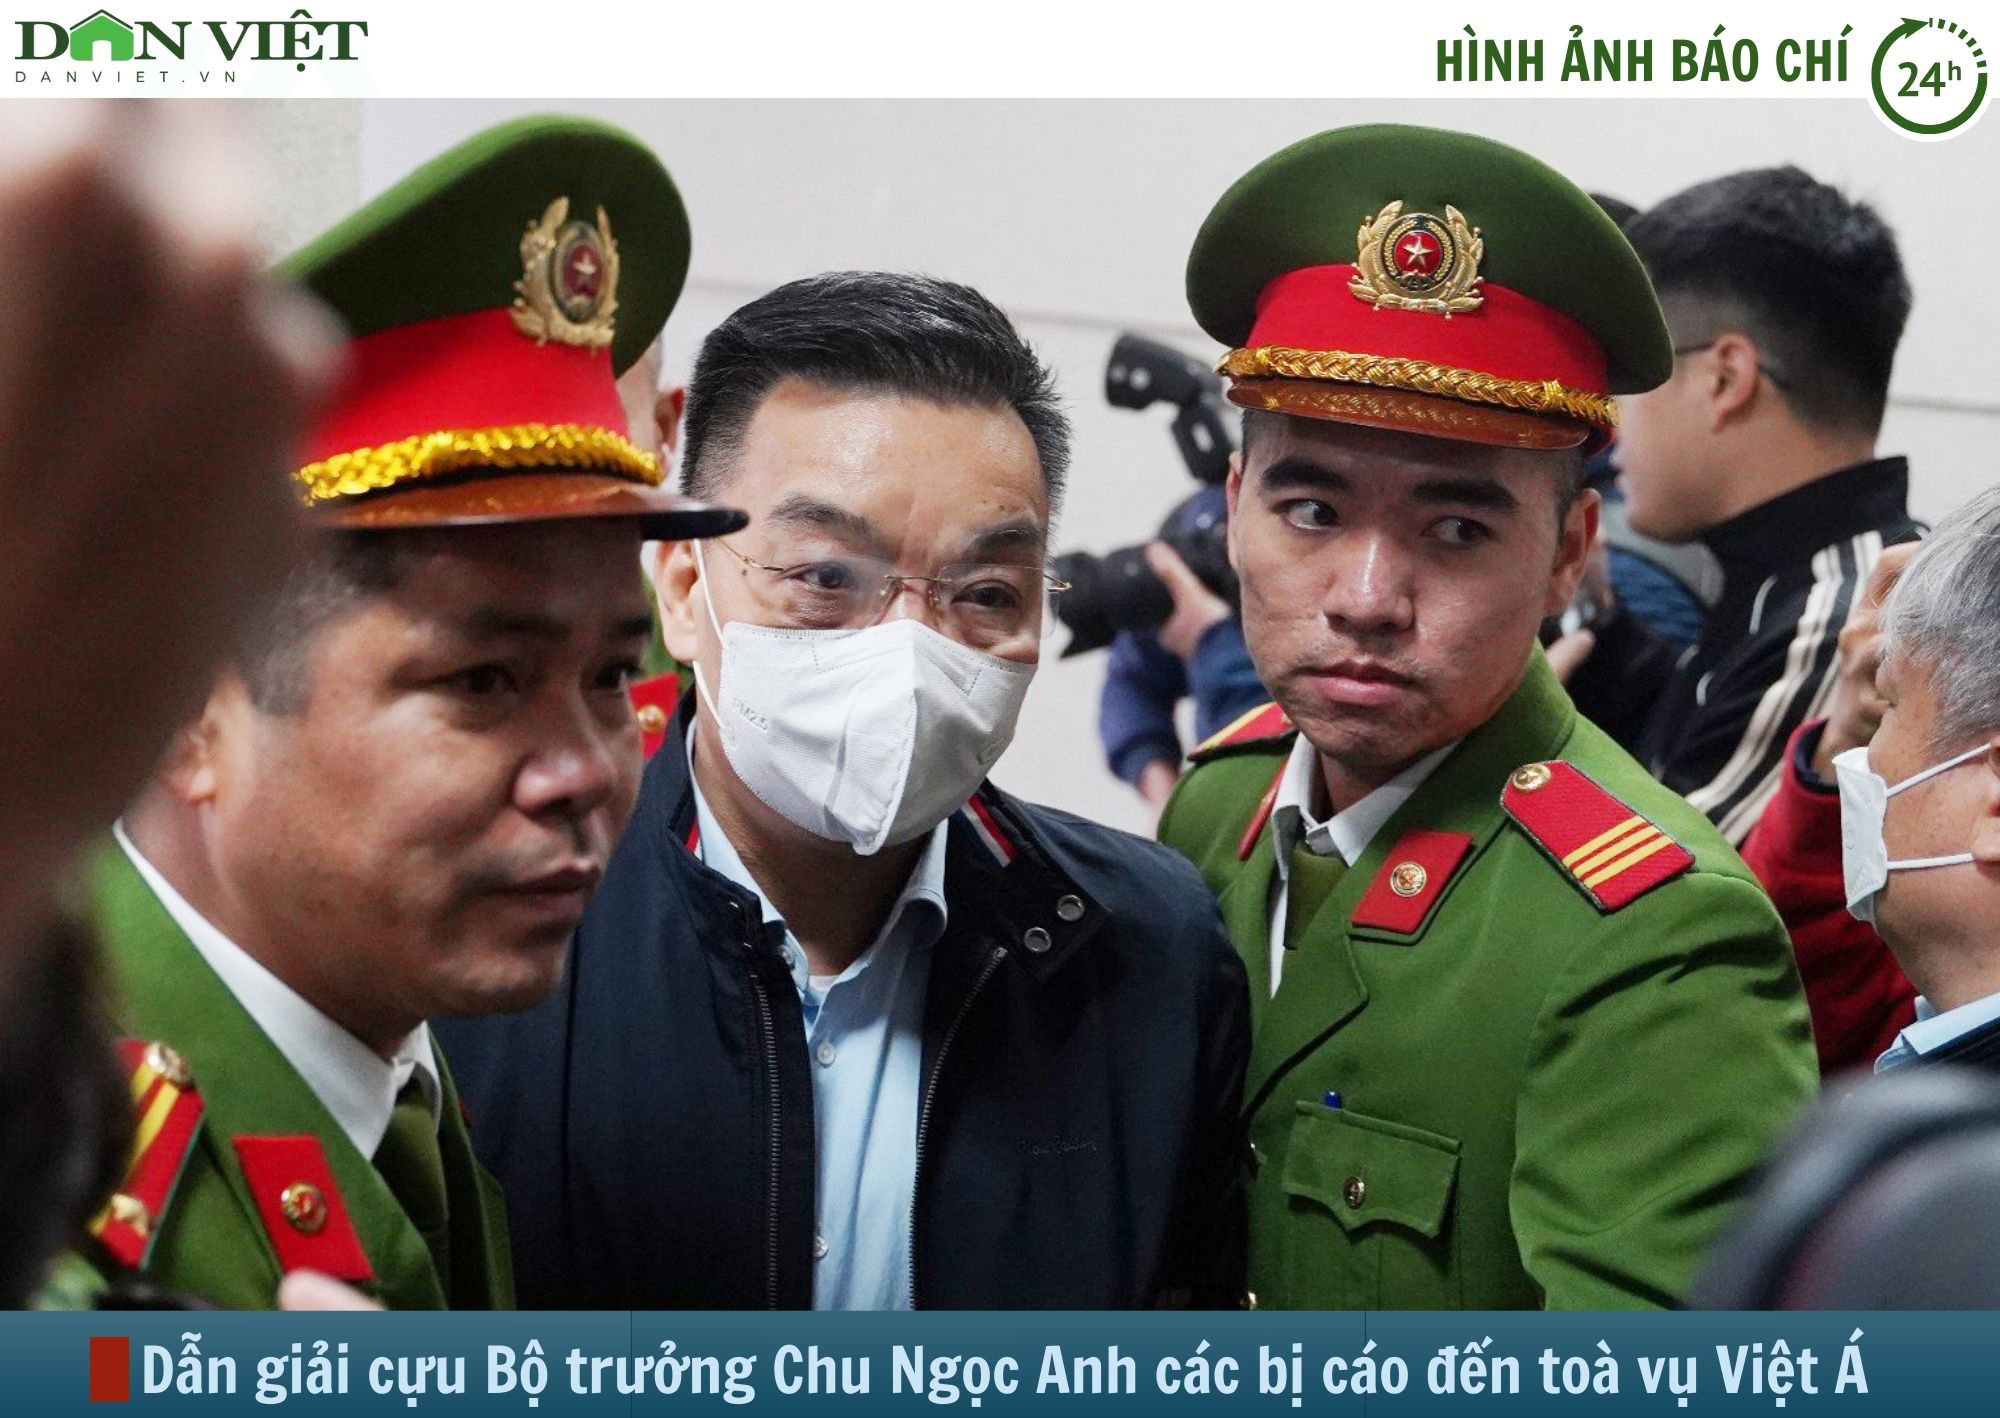 Hình ảnh báo chí 24h: Dẫn giải cựu Bộ trưởng Chu Ngọc Anh và các bị cáo đến tòa vụ Việt Á- Ảnh 1.